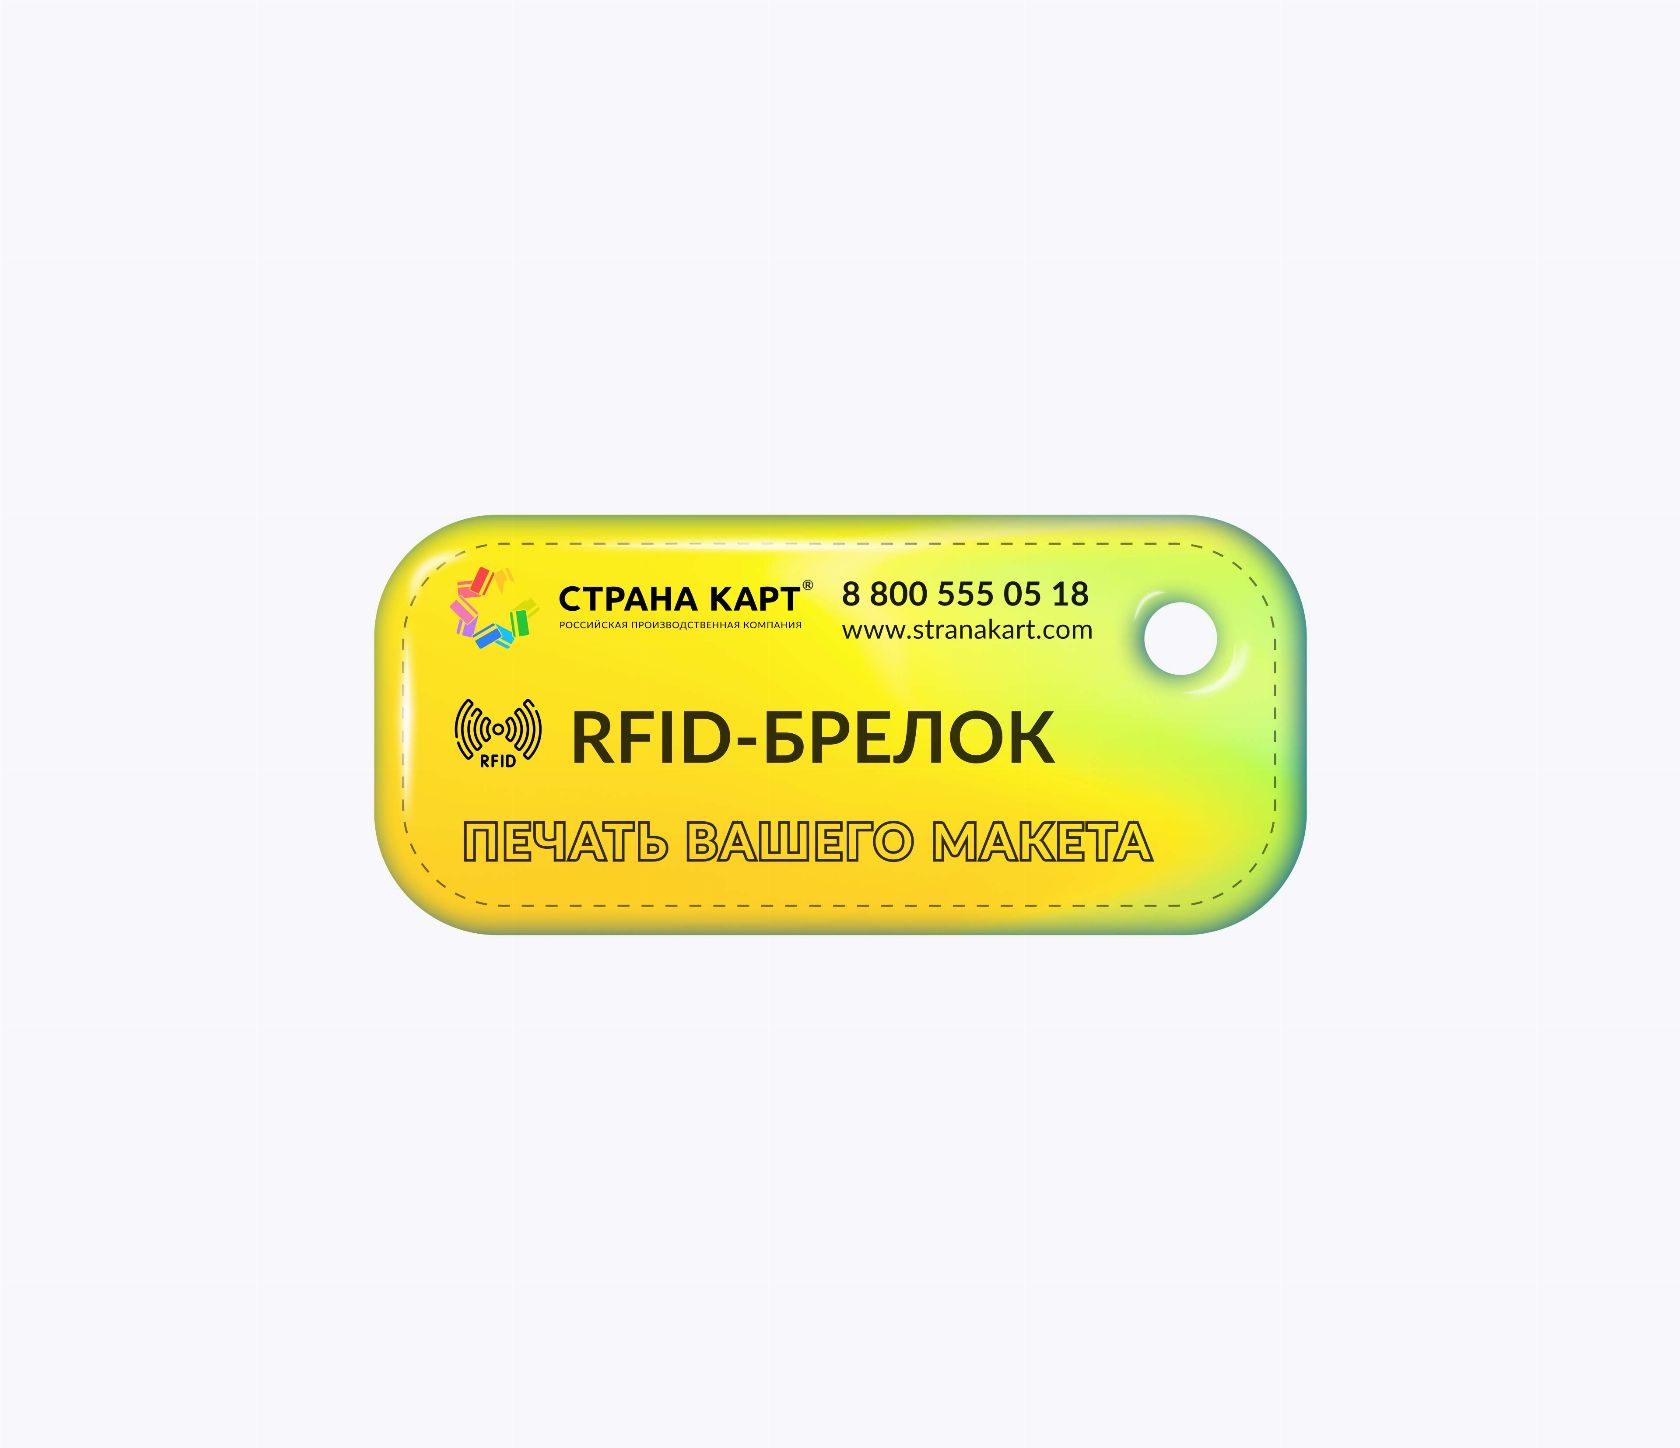 Прямоугольные мини RFID-брелоки NEOKEY® с чипом SMARTTAG 1k 4 byte nUID RFID-брелоки NEOKEY® с чипом SMARTTAG 1k 4 byte nUID и вашим логотипом